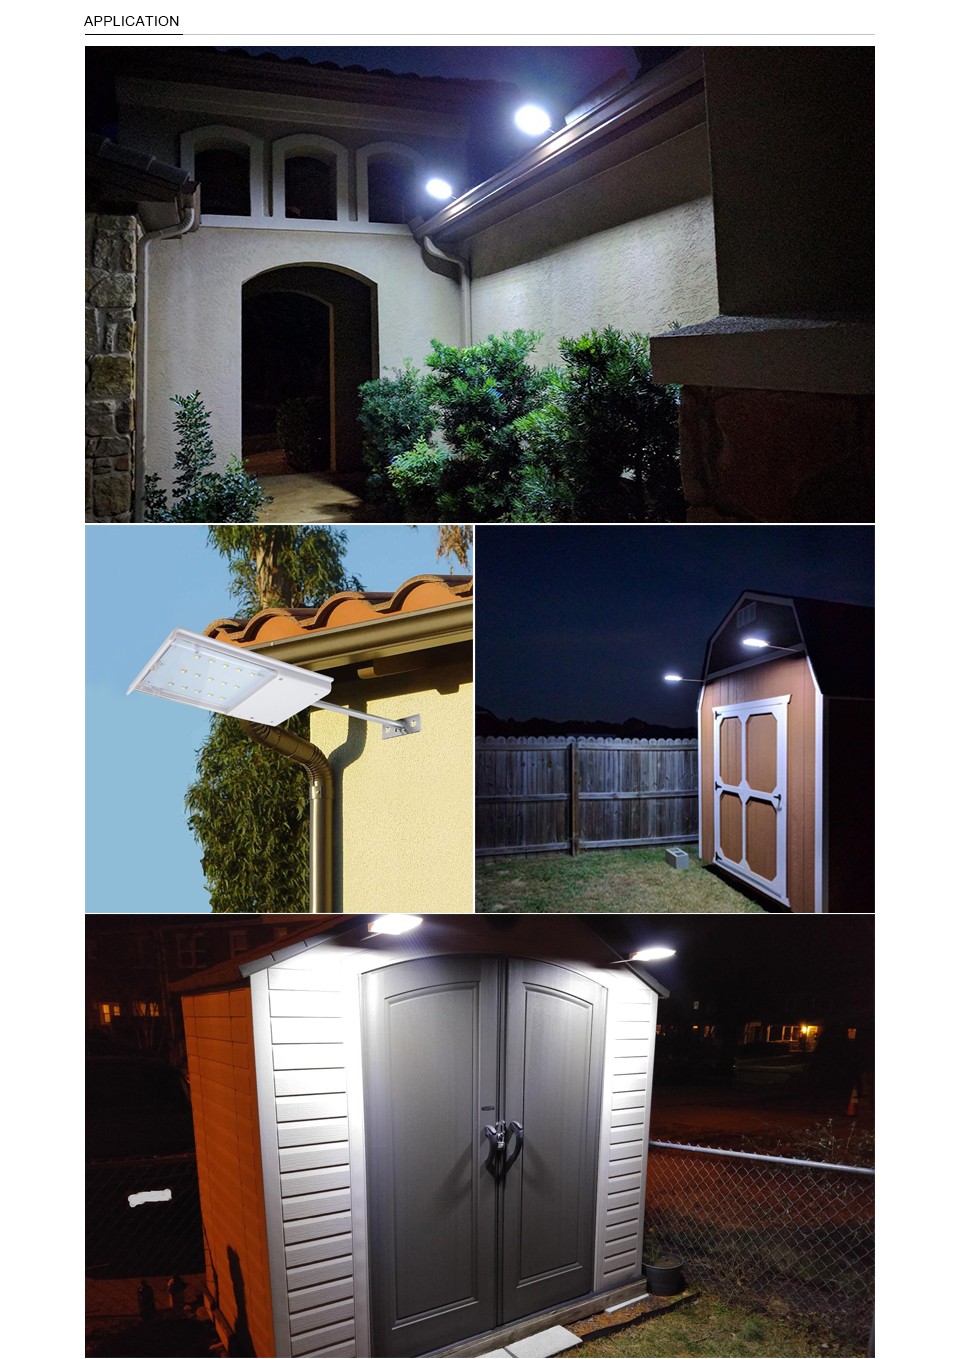 15 LED Solar Panel Powered Street Light Solar Lamp Light Sensor Outdoor Lighting for Garden Path Spot Light Wall Emergency Lamp